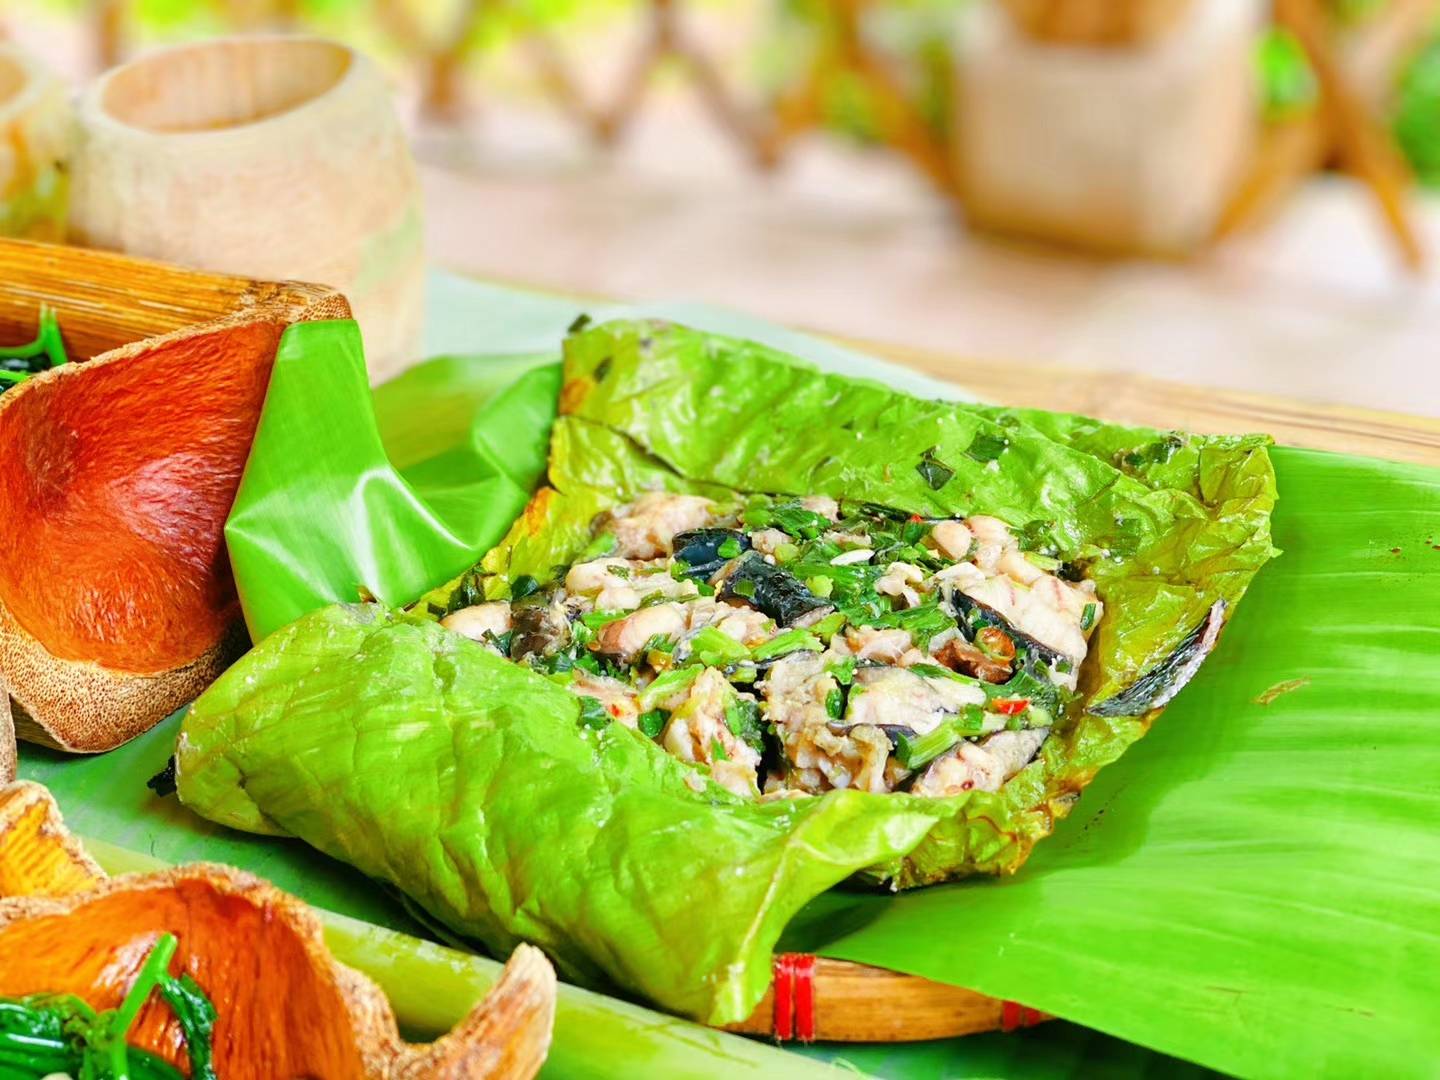 包烧 包烧是傣族传统的烹饪方式之一,芭蕉叶包烧江鳅是傣味菜的名菜